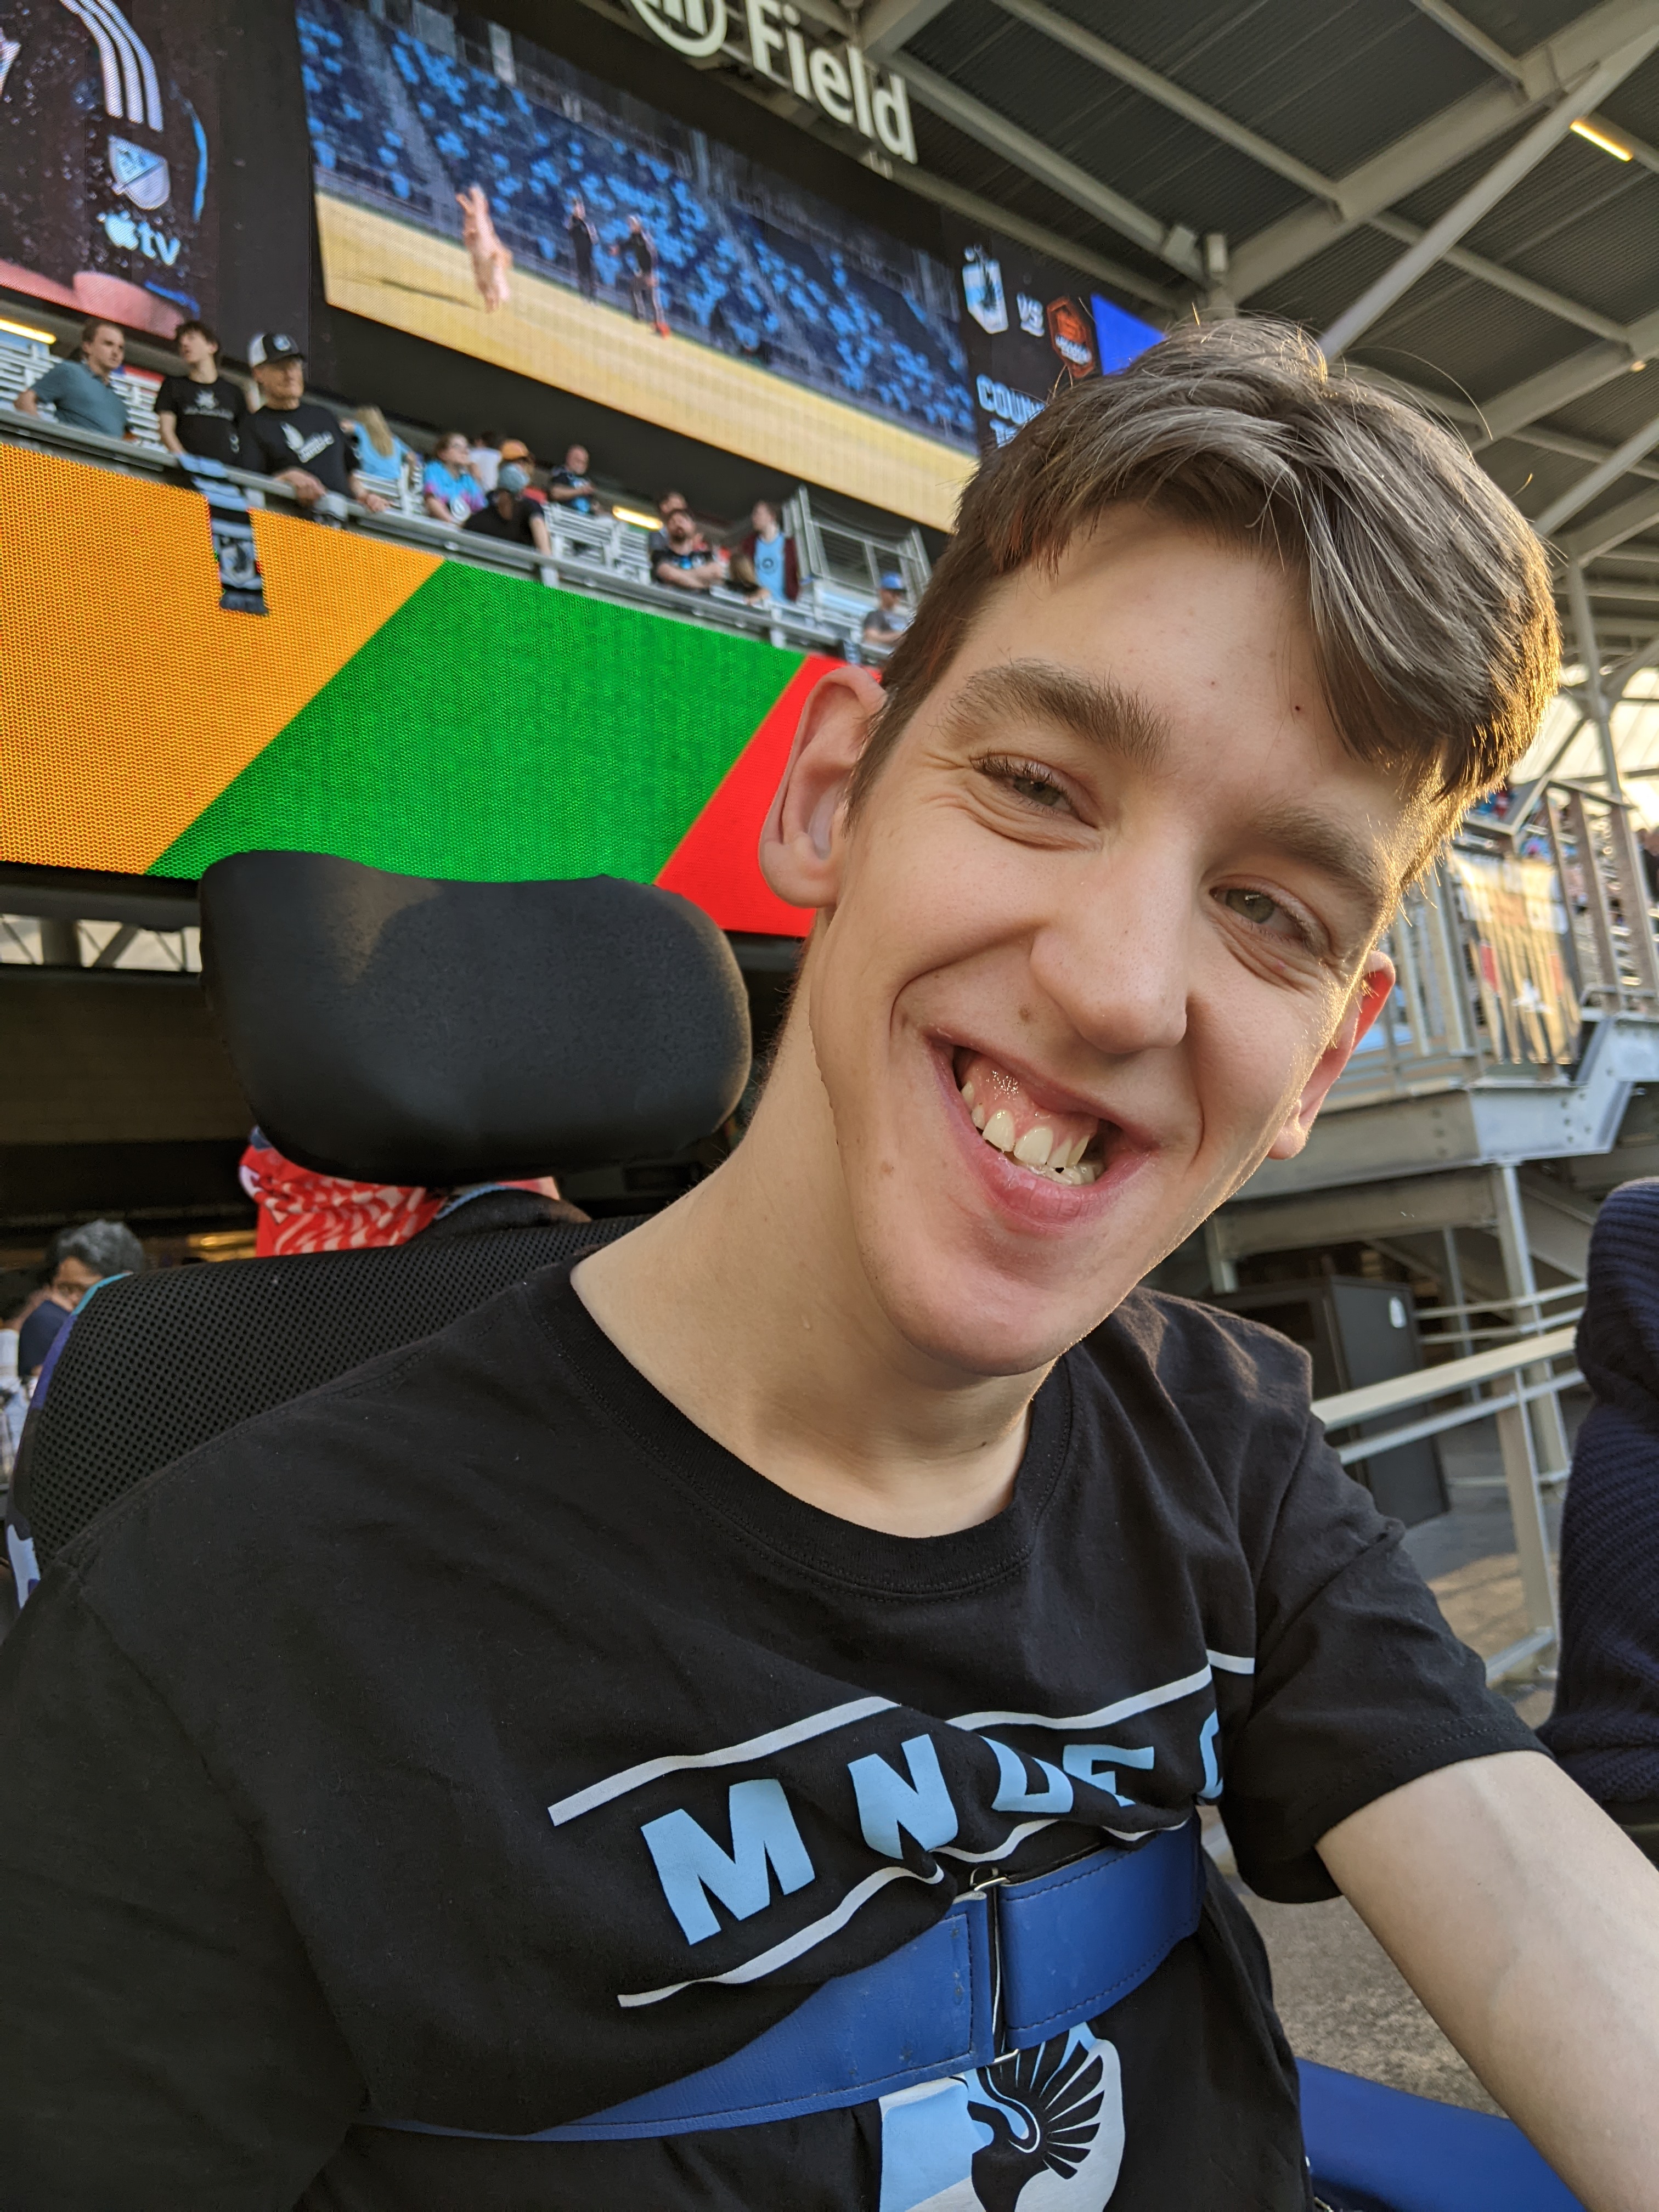 Justin in wheelchair, smiling, wearing MN UFC shirt, in stadium